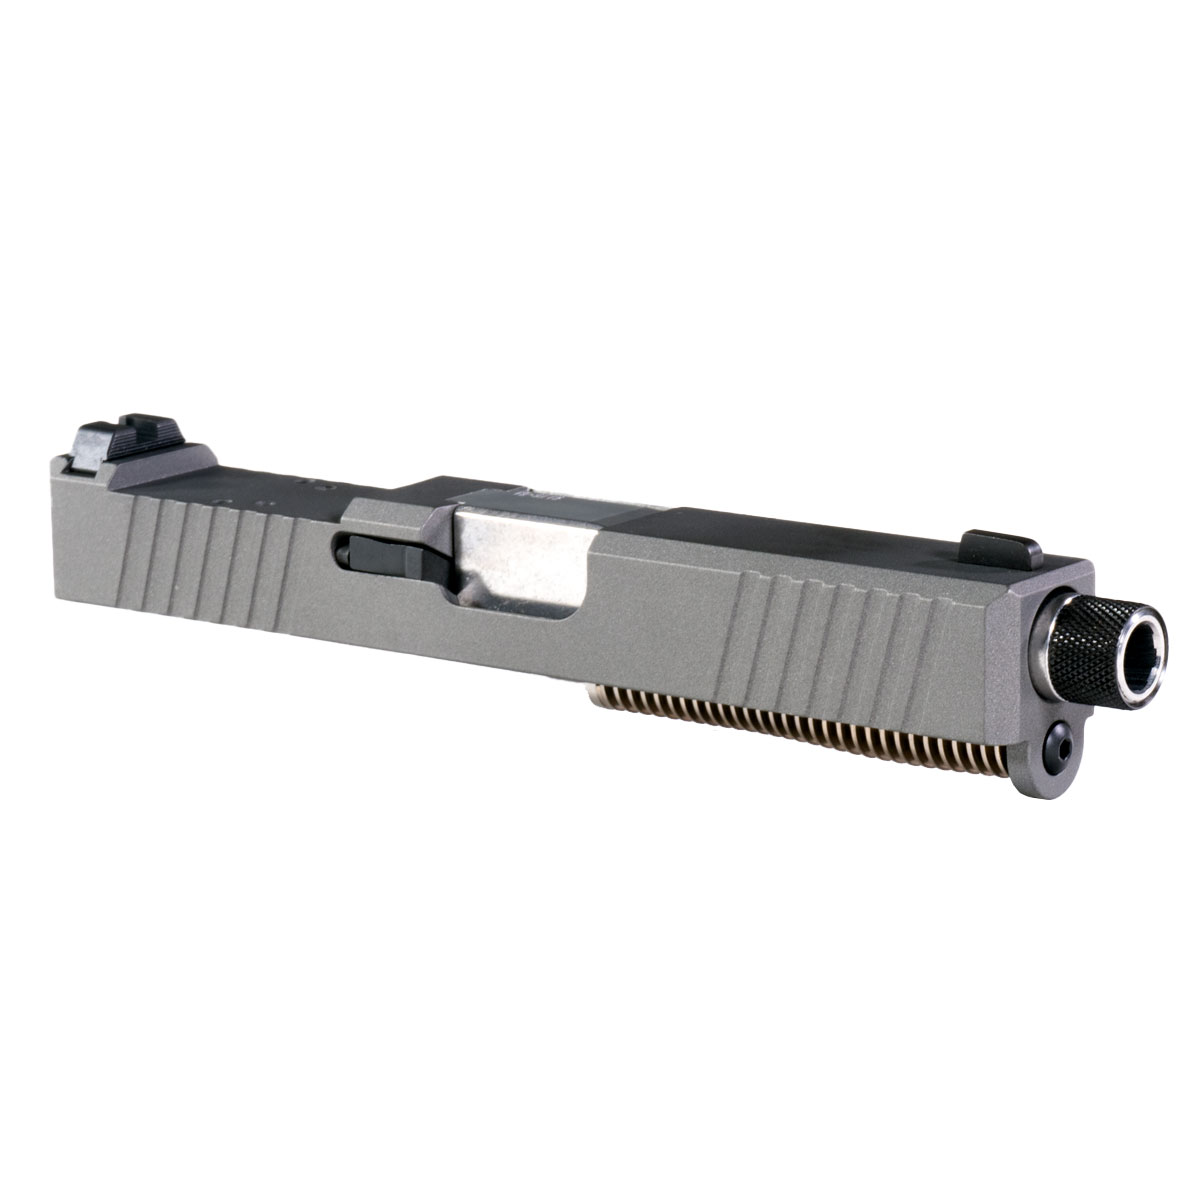 DD 'Azurean' 9mm Complete Slide Kit - Glock 19 Gen 1-3 Compatible